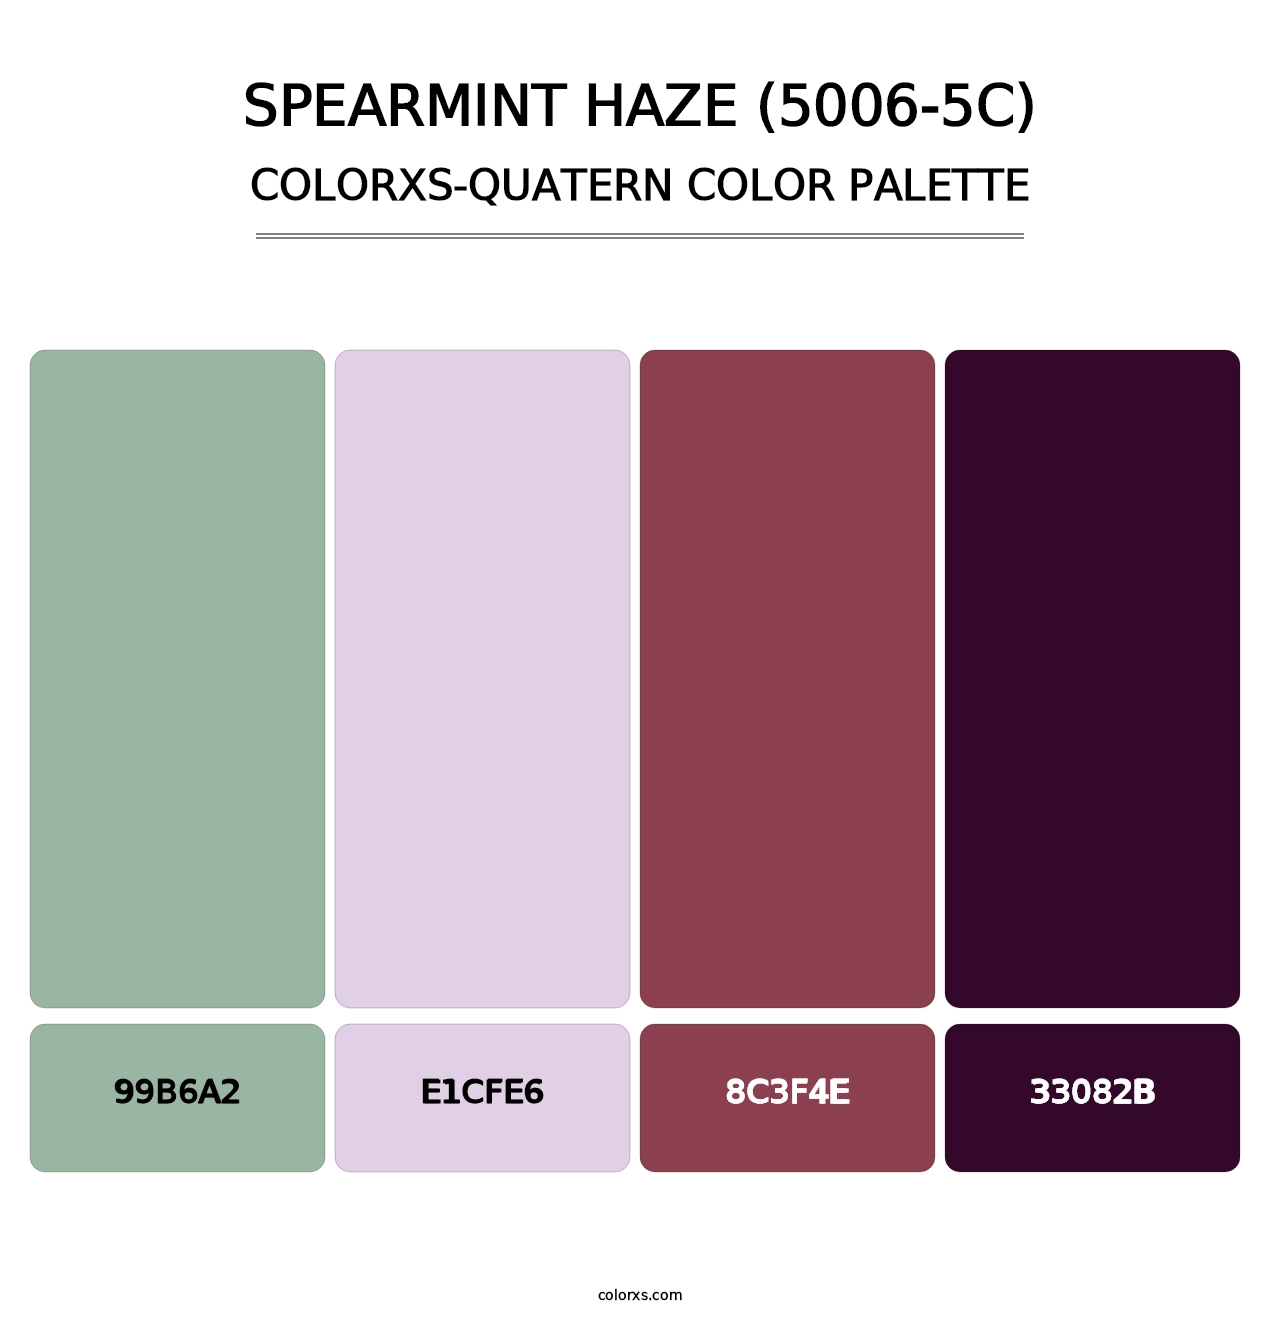 Spearmint Haze (5006-5C) - Colorxs Quatern Palette